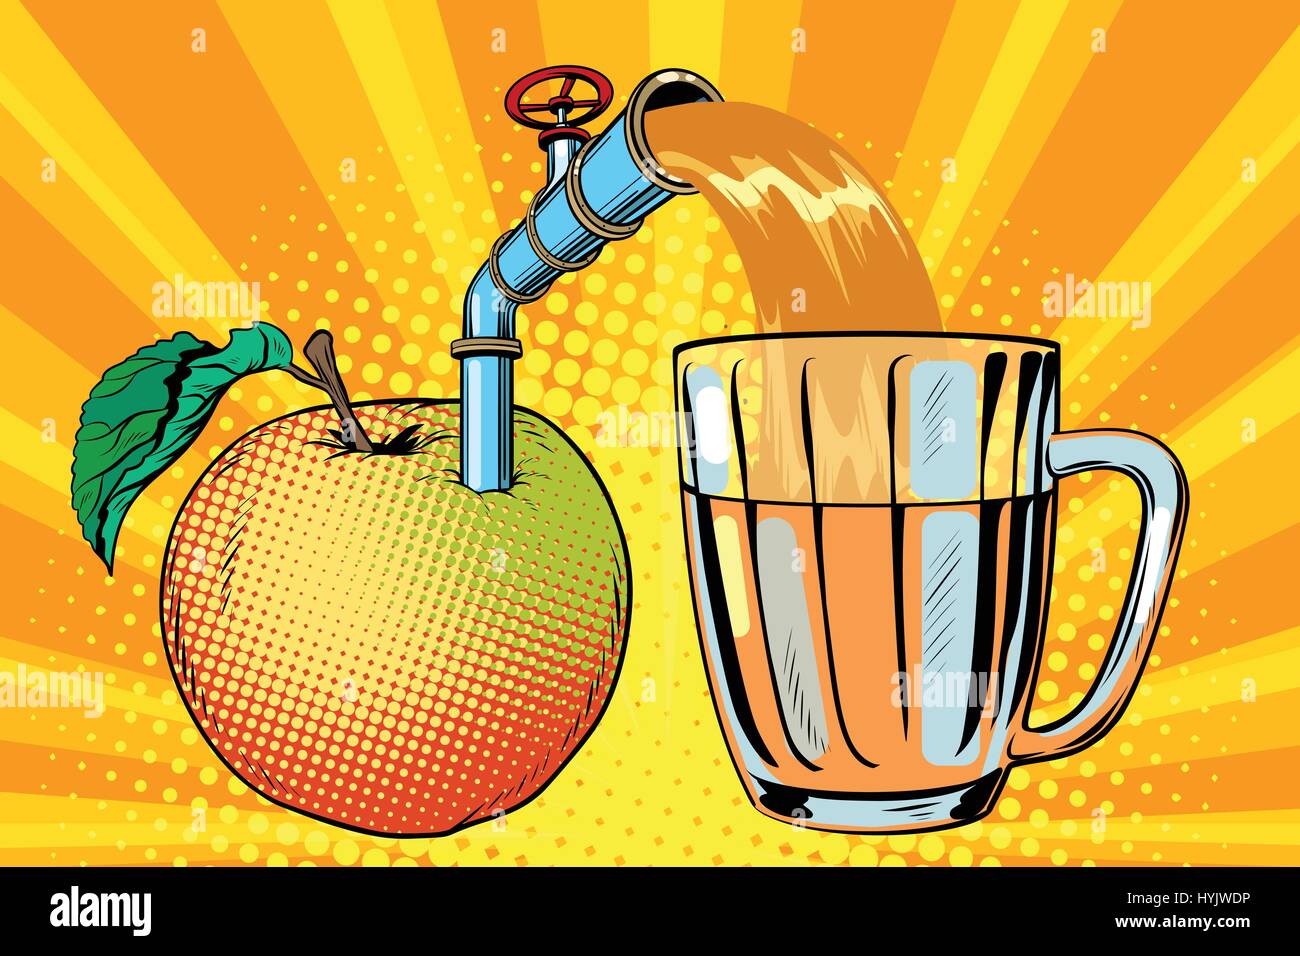 Le jus de pomme est versé dans une tasse Illustration de Vecteur